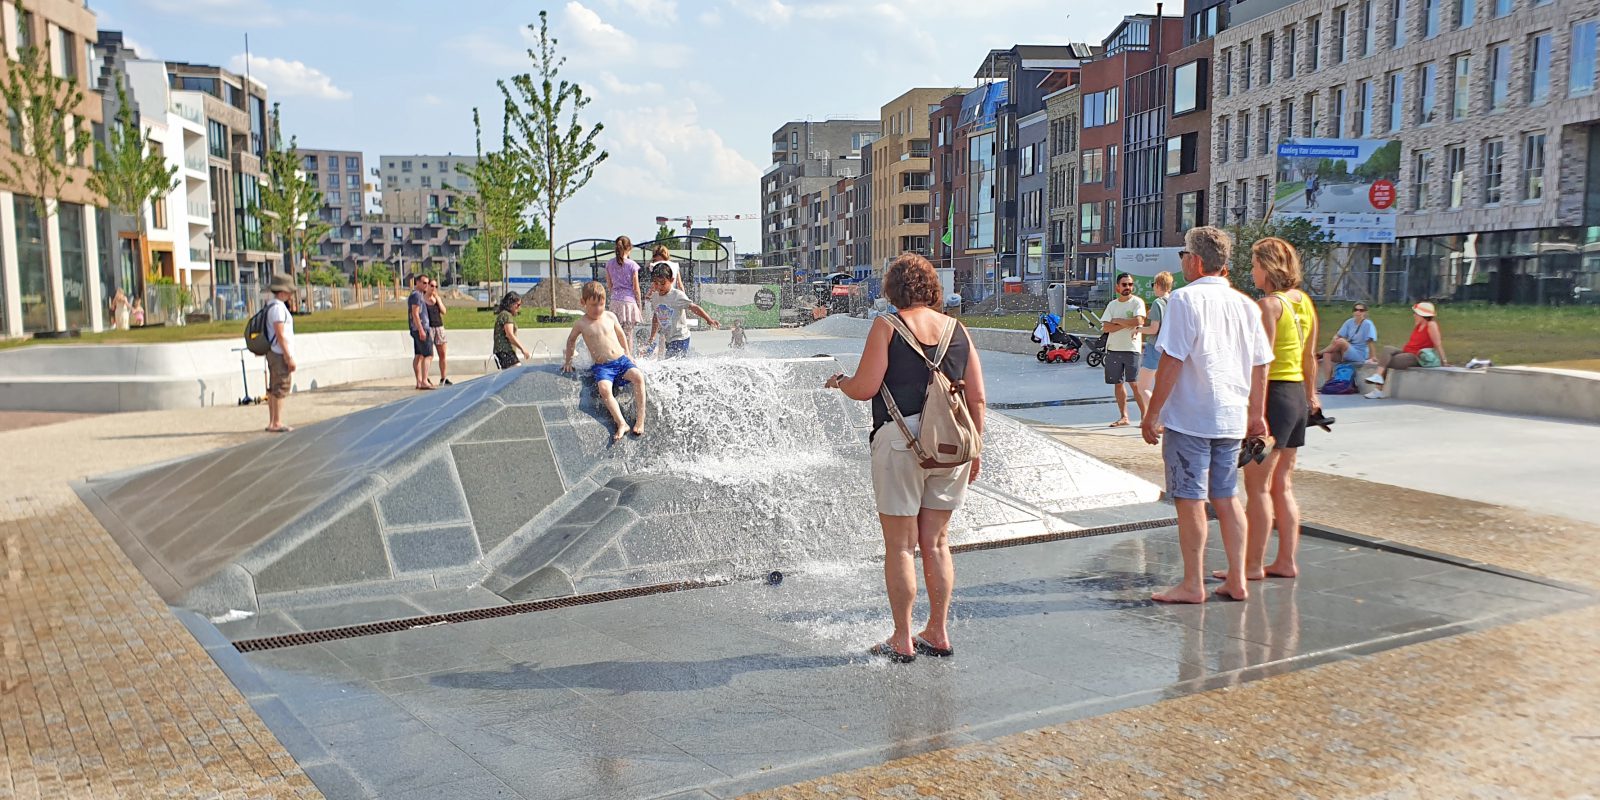 Mensen in openbare ruimte in Delft bij een waterelement